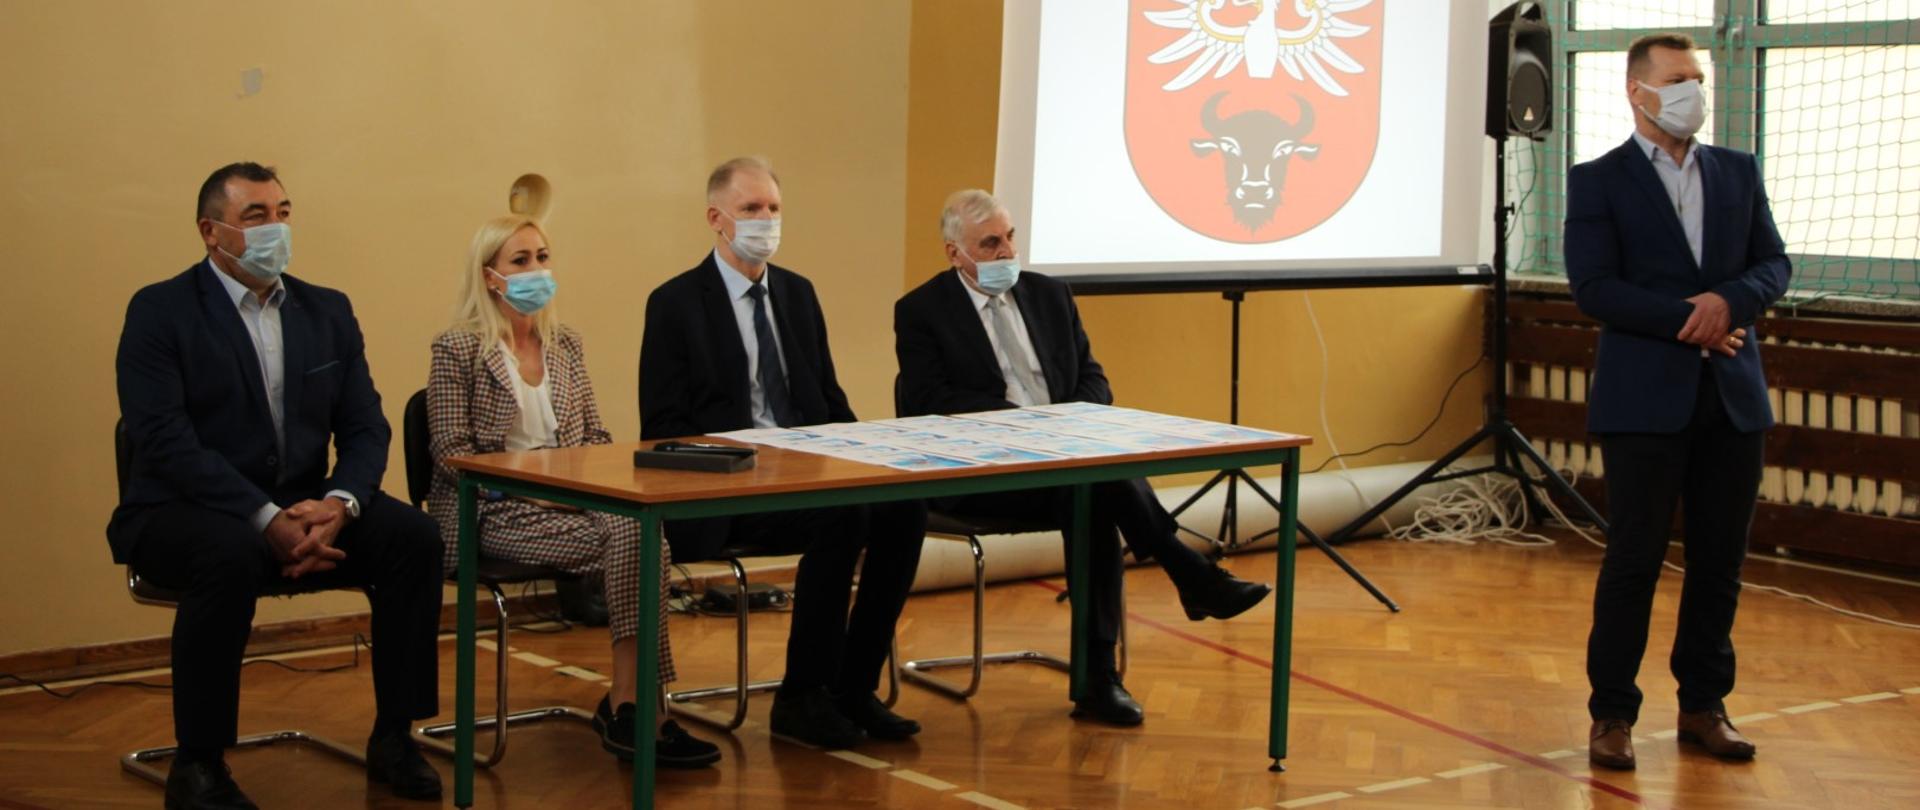 od lewej: dyrektor SP4, Pani Milena Orłowska, Starosta Zambrowski i Burmistrz Miasta Zambrów, natomiast z lewej strony stoi nauczyciel SP4 Pan Tomasz Piórkowski